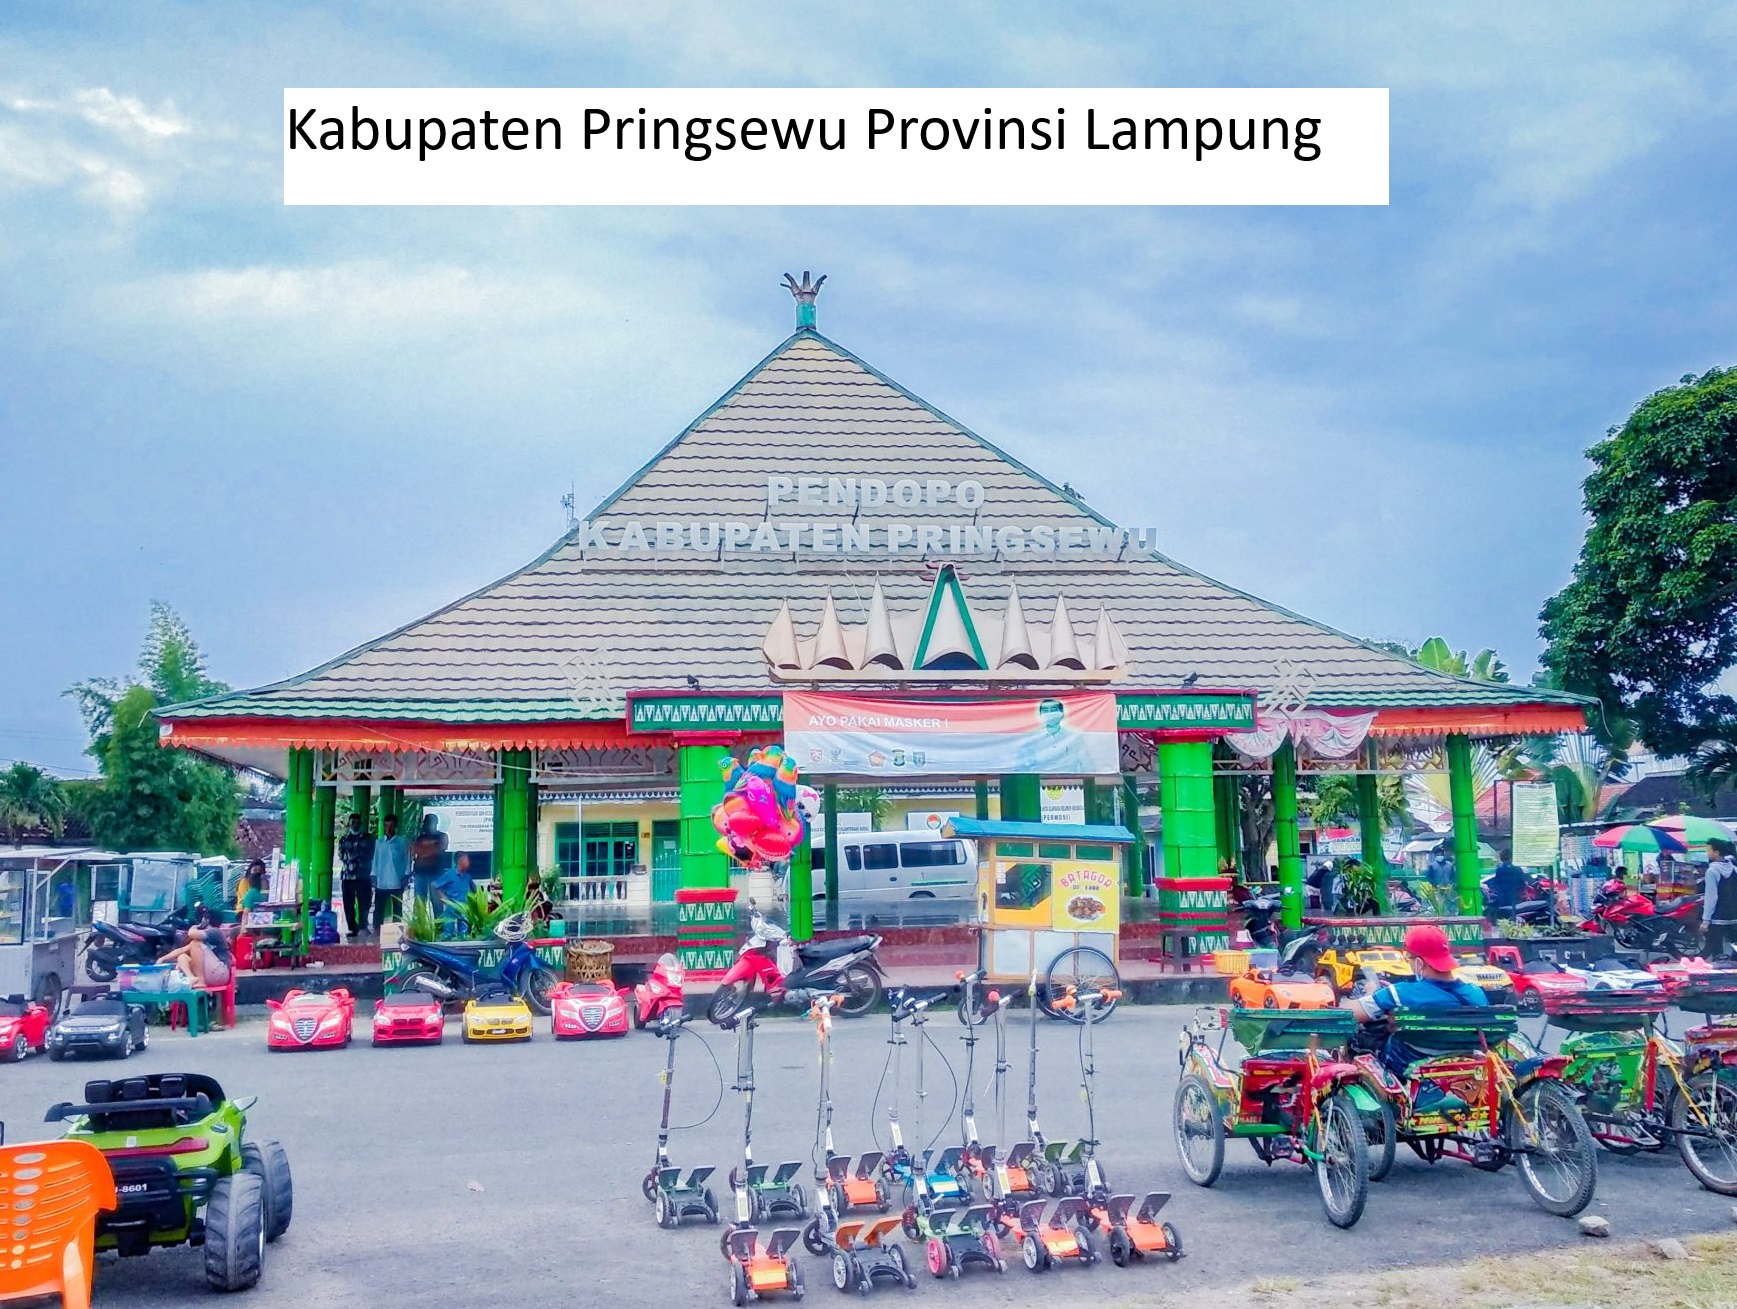 Wacana Kota Baru Pringsewu: Potret Pemekaran Kabupaten Pringsewu yang Menjanjikan Kemajuan Lampung